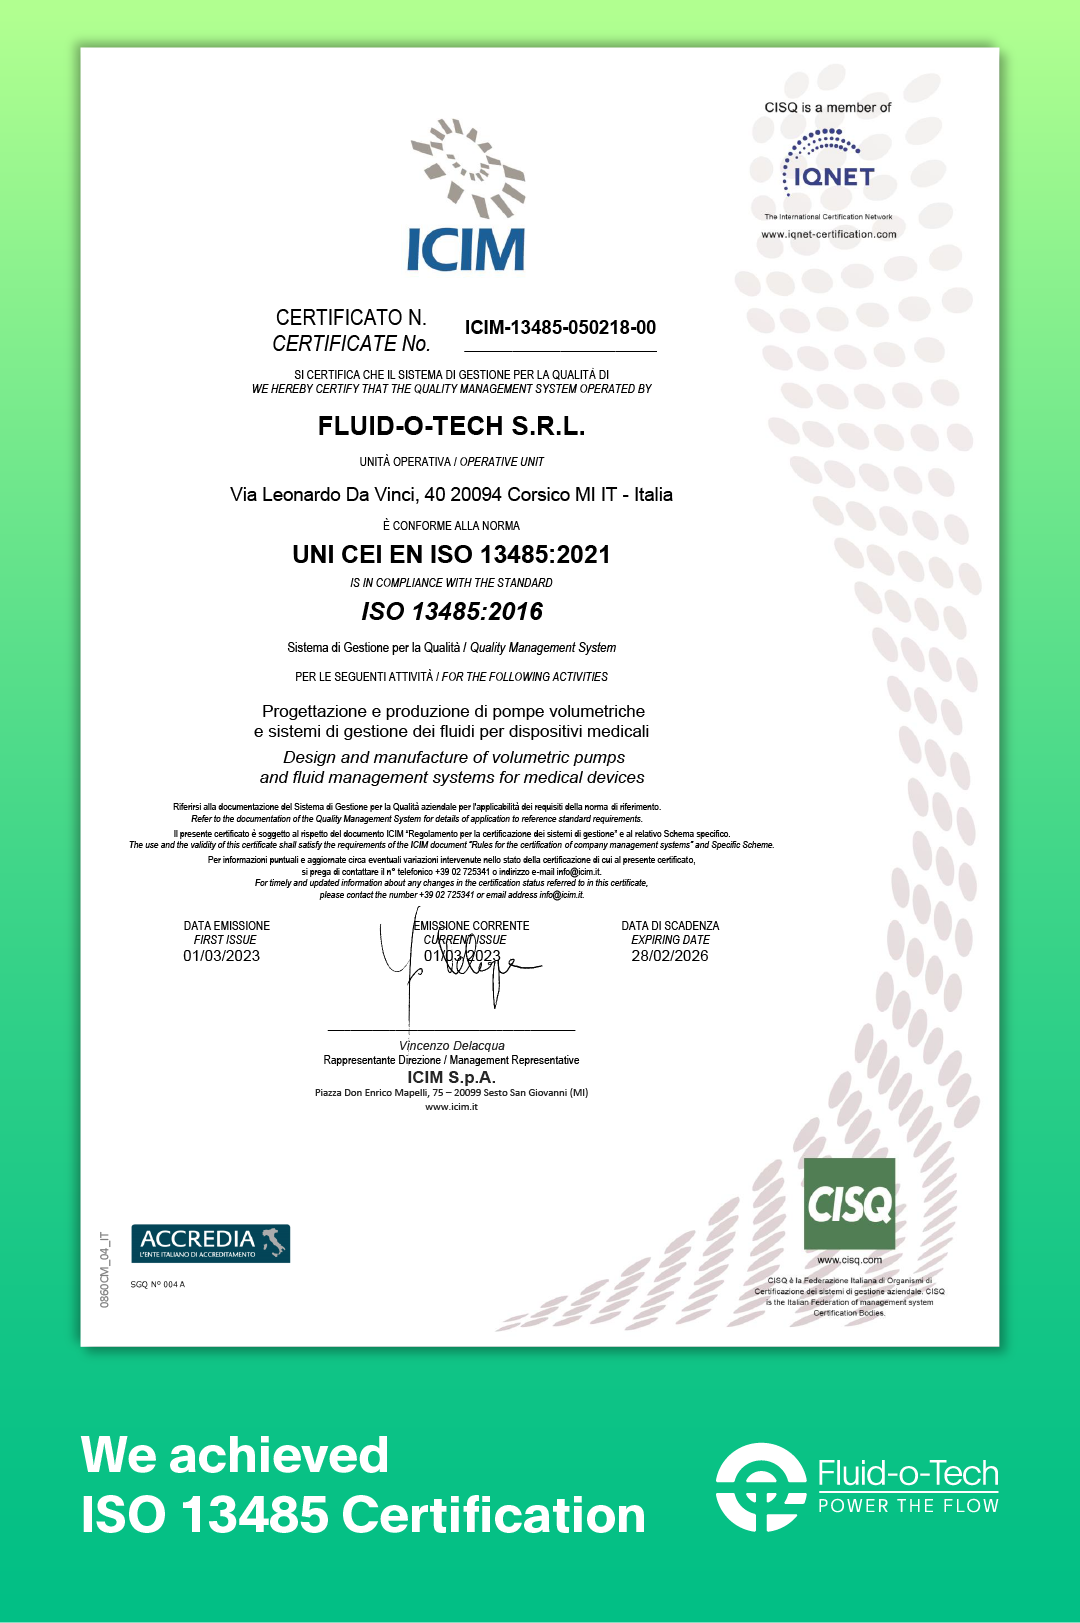 Die Zertifizierung UNI CEI EN ISO 13485:2021